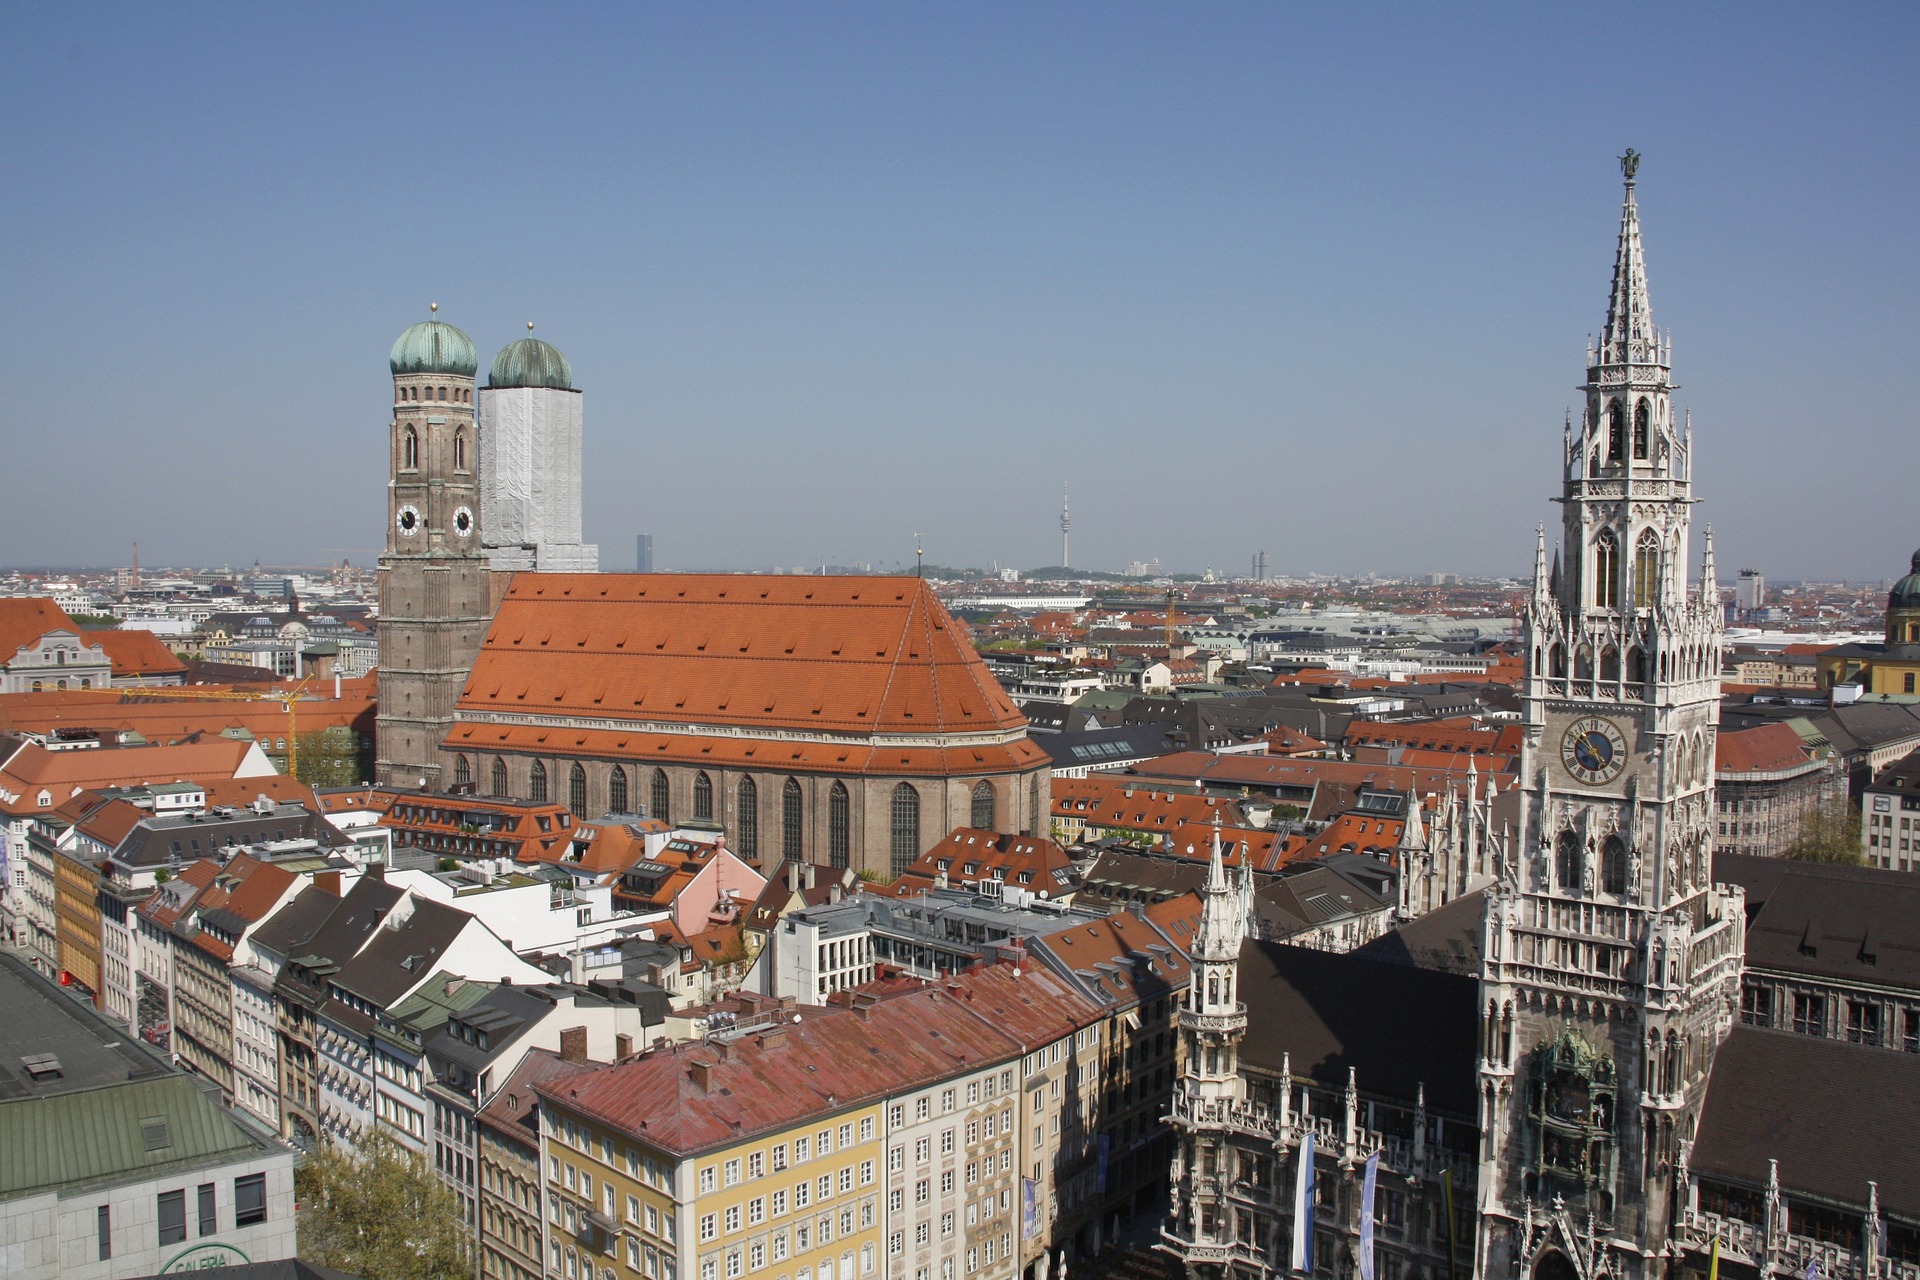 Munich view at the Rathausplatz